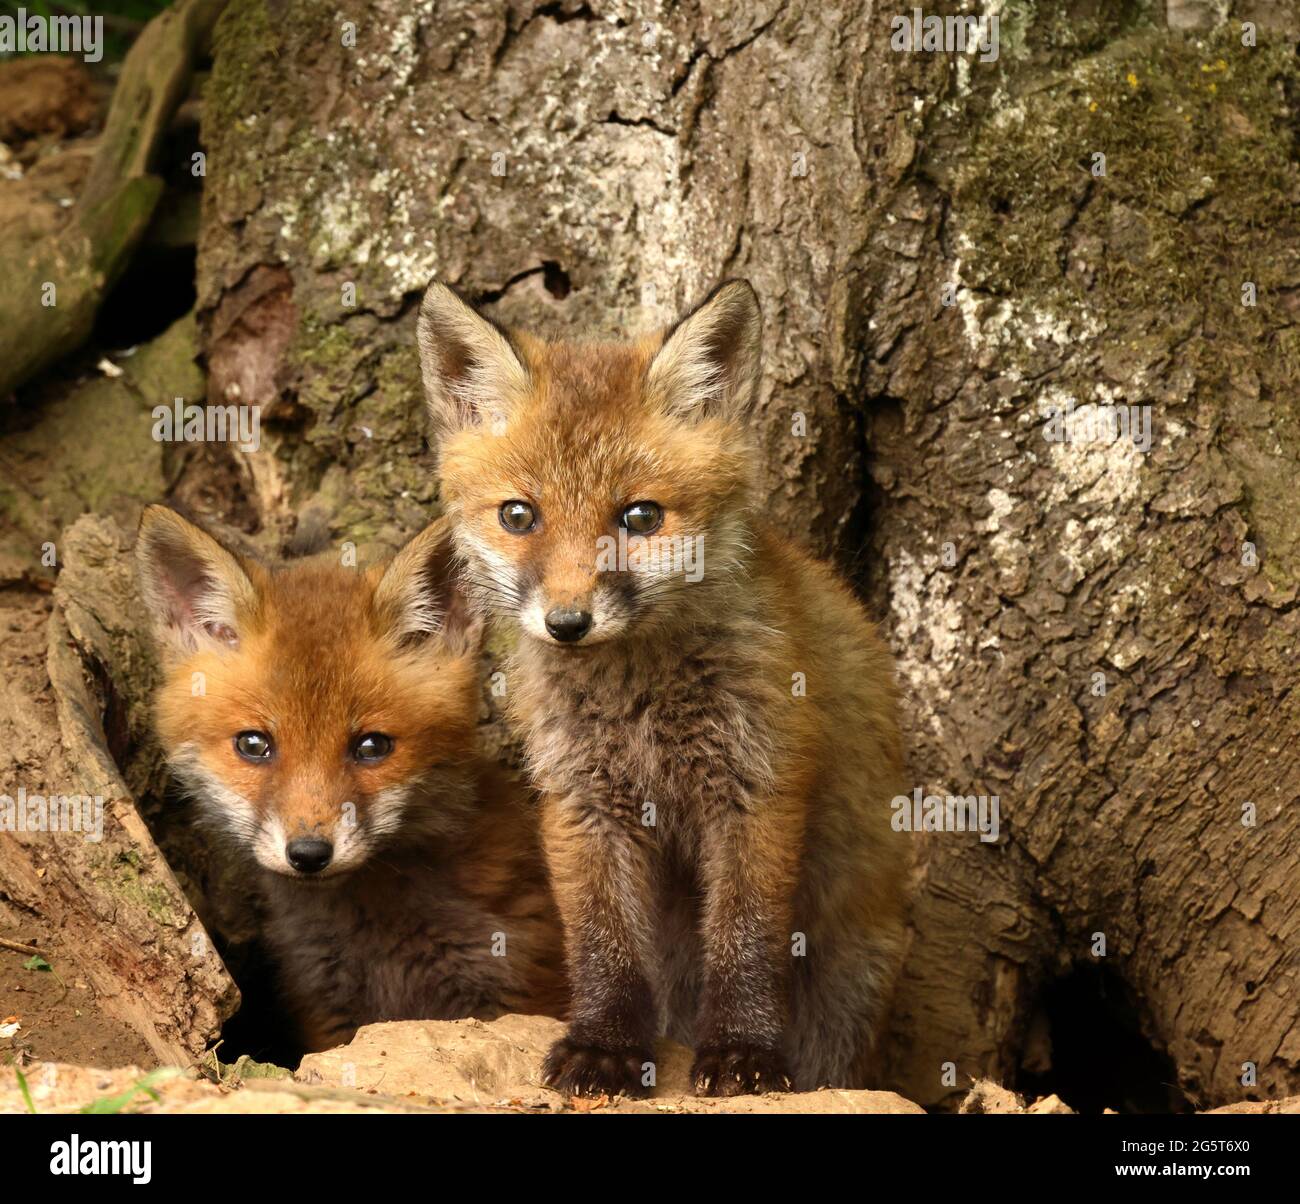 Renard roux (Vulpes vulpes), deux petits renards devant le corbeau, regardant dans la caméra, Allemagne, Baden-Wuerttemberg Banque D'Images